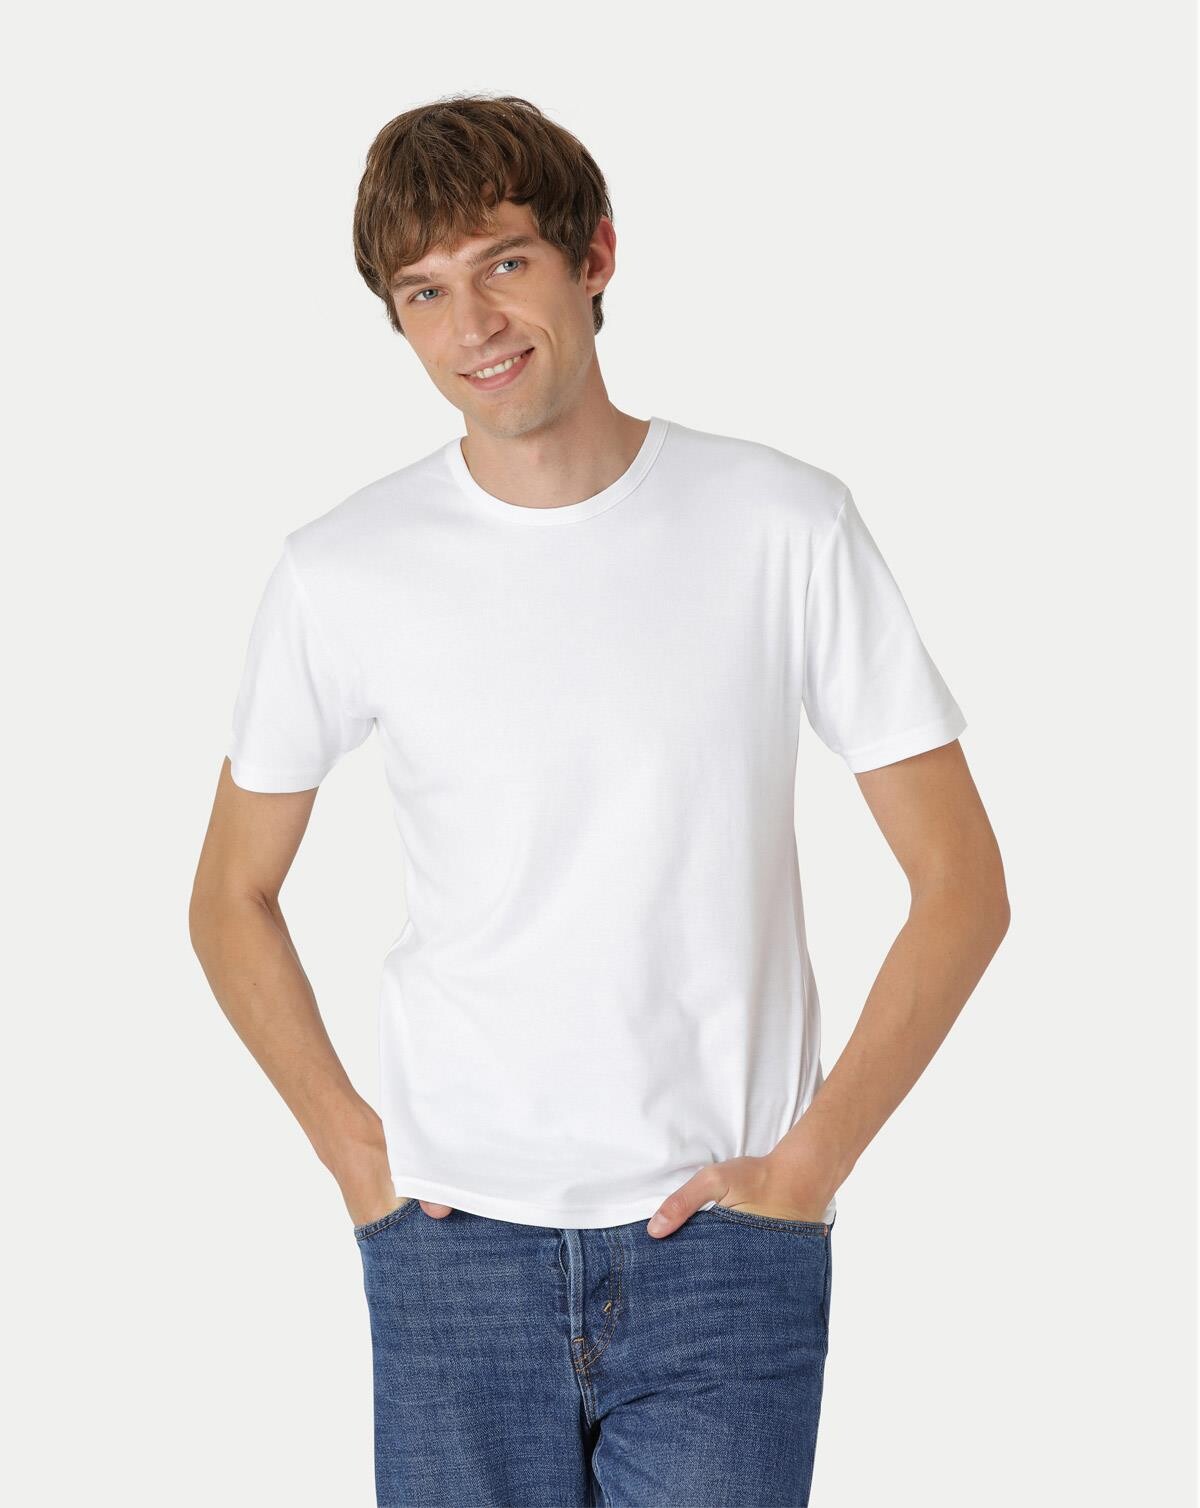 Neutral Økologisk - Herre Interlock T-shirt (Hvid, S)